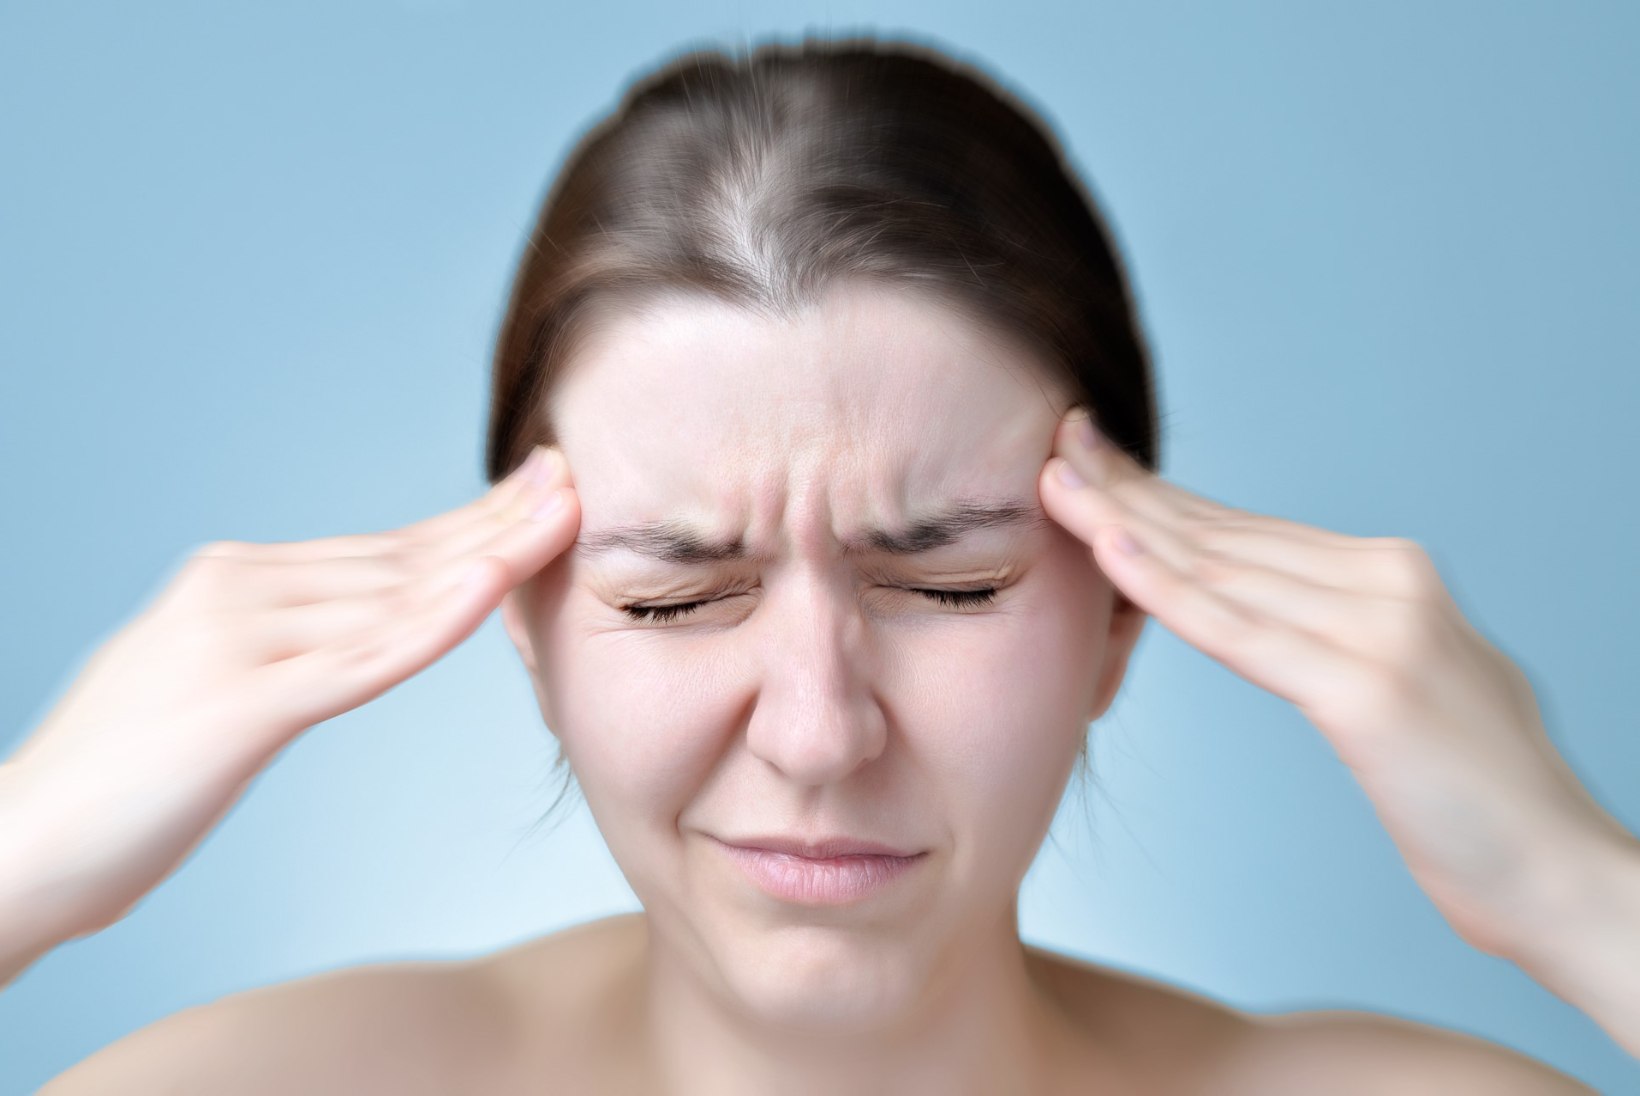 Migreen suurendab tõenäosust haigestuda karpaalkanali sündroomi